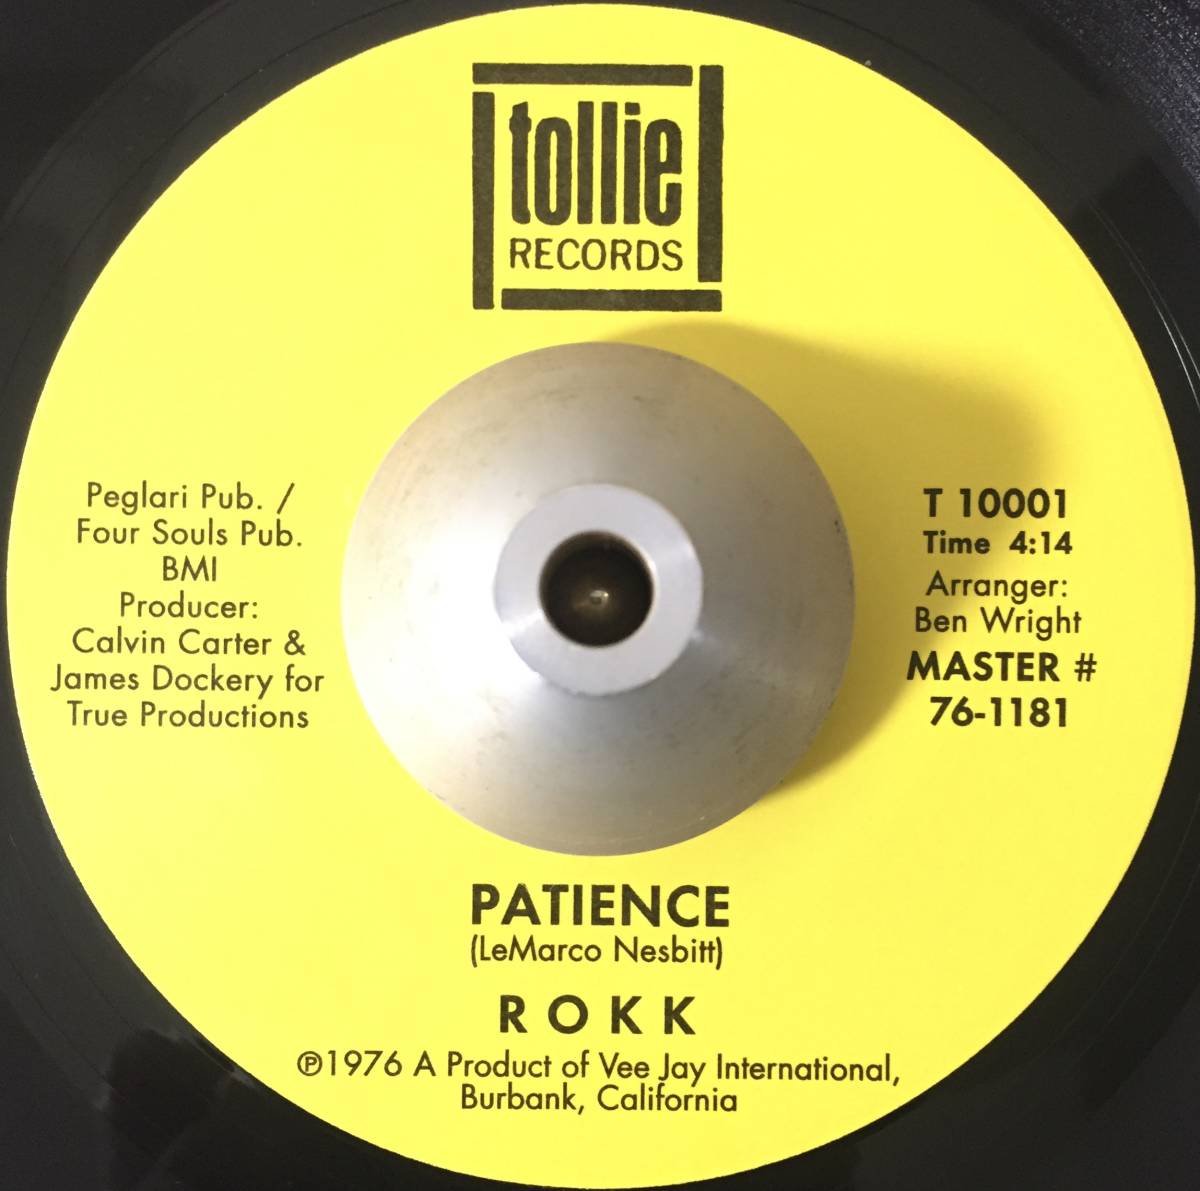 視聴 極美盤 ROKK - Patience / Don't Be No Fool NUMERO MODERN SOUL RARE GROOVE FUNK レア クロスオーバー EP 7inch レコード 廃盤 希少